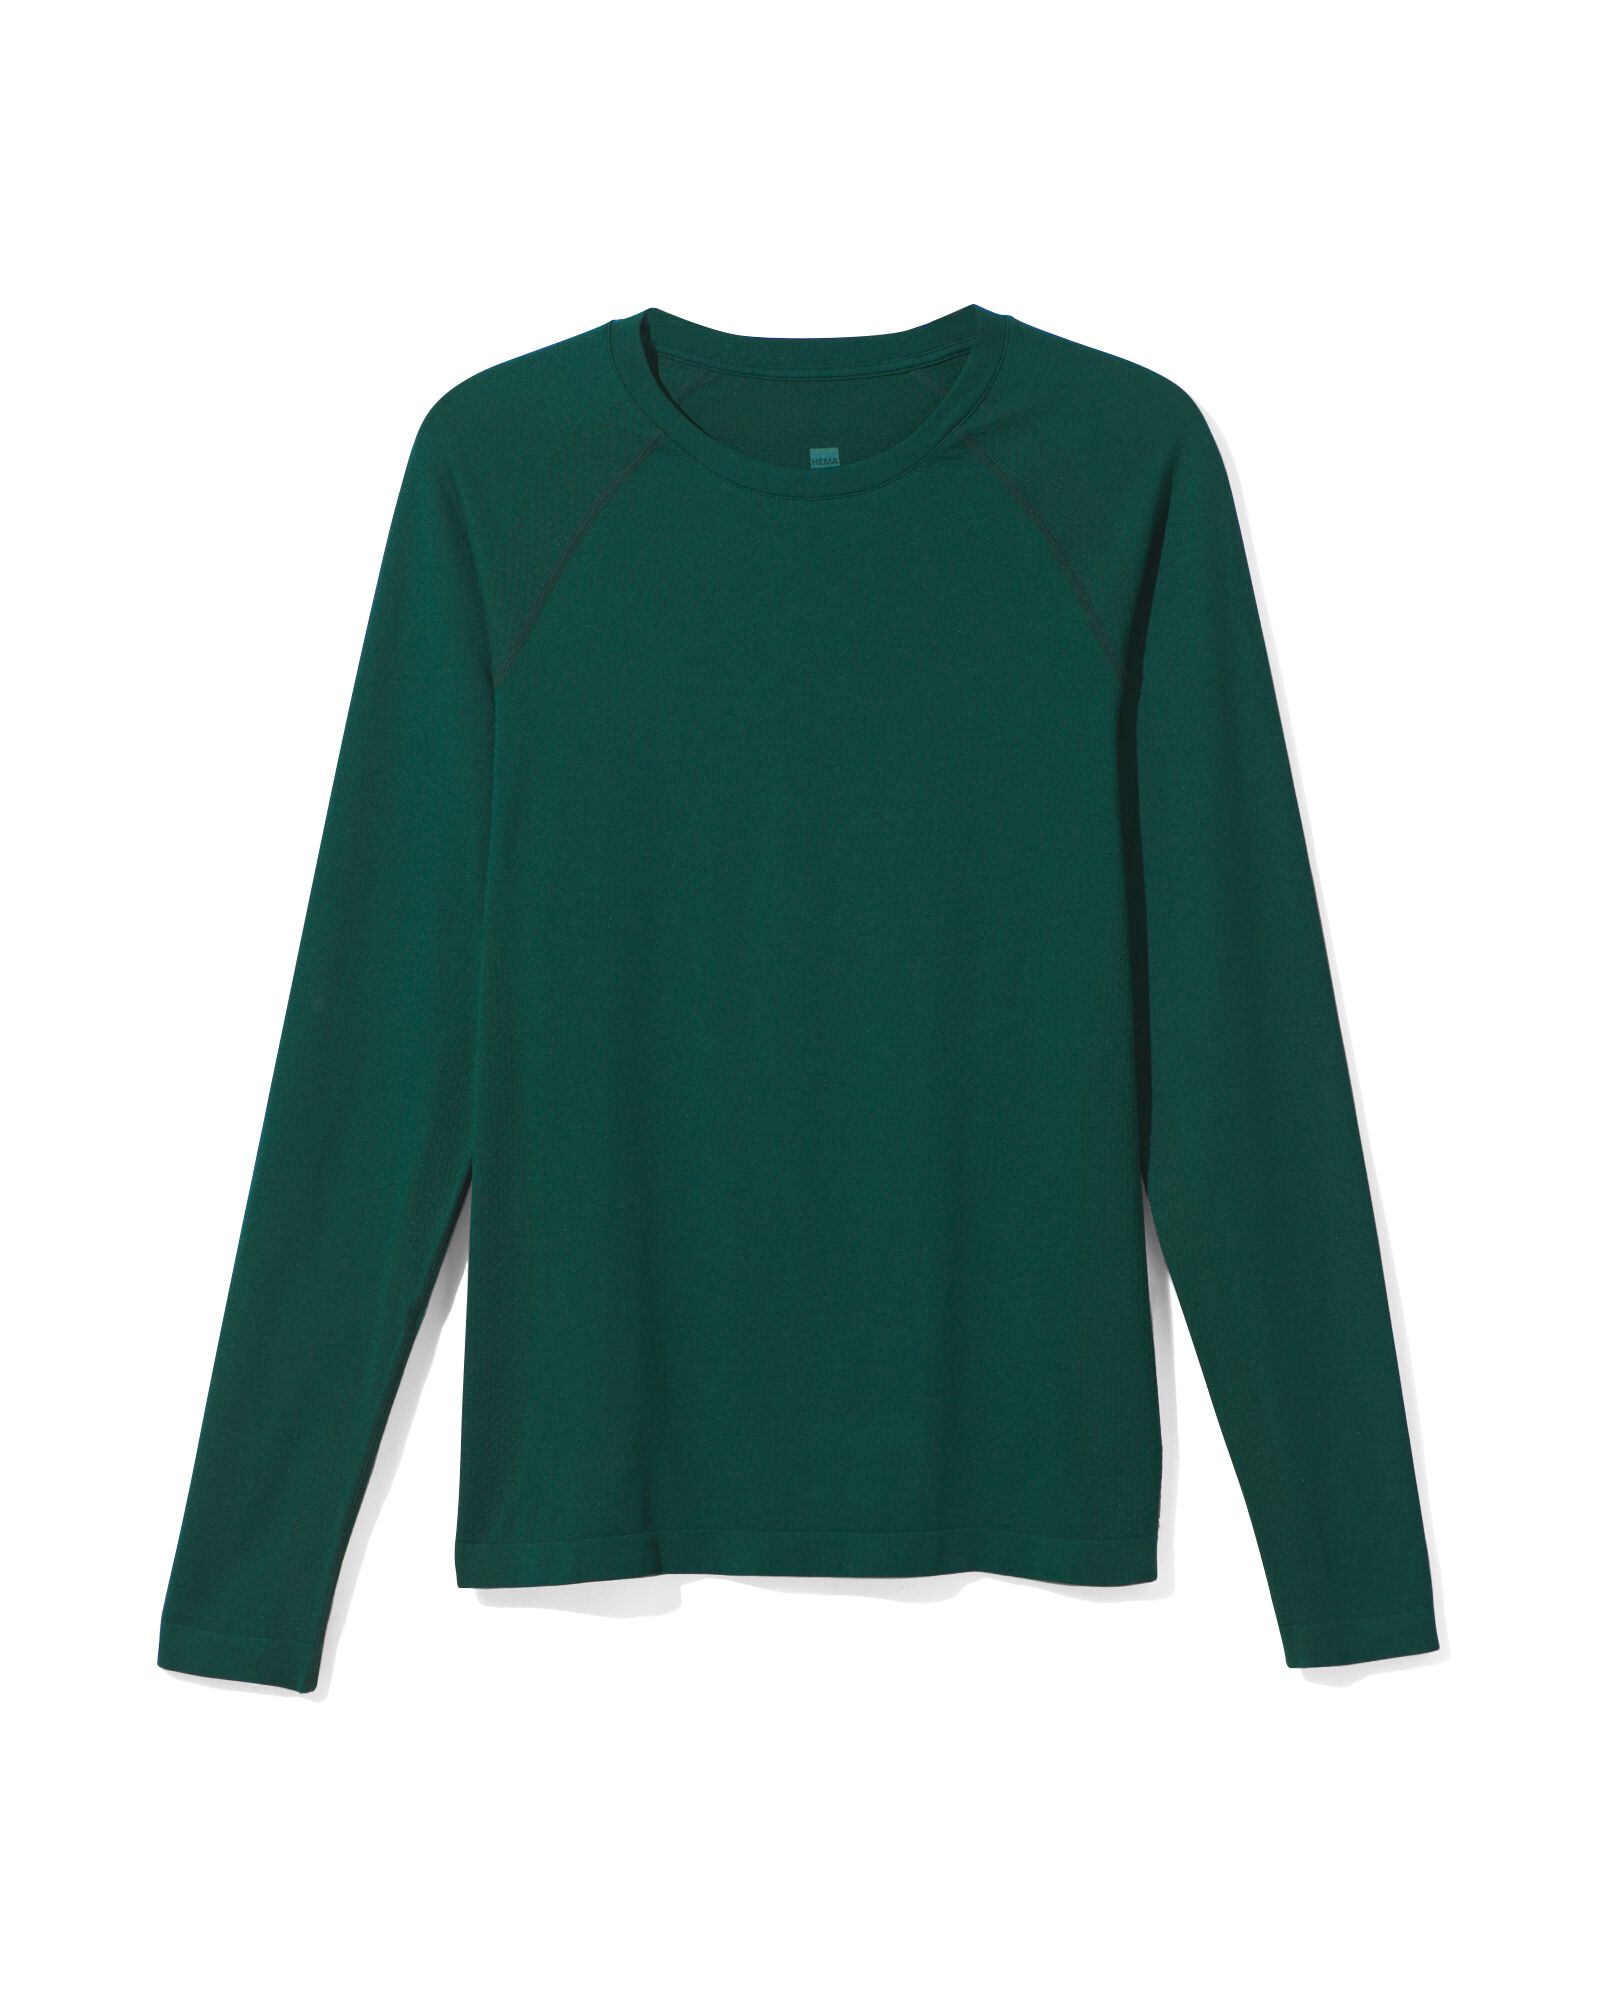 Damen-Sportshirt, nahtlos dunkelgrün dunkelgrün - 36090128DARKGREEN - HEMA